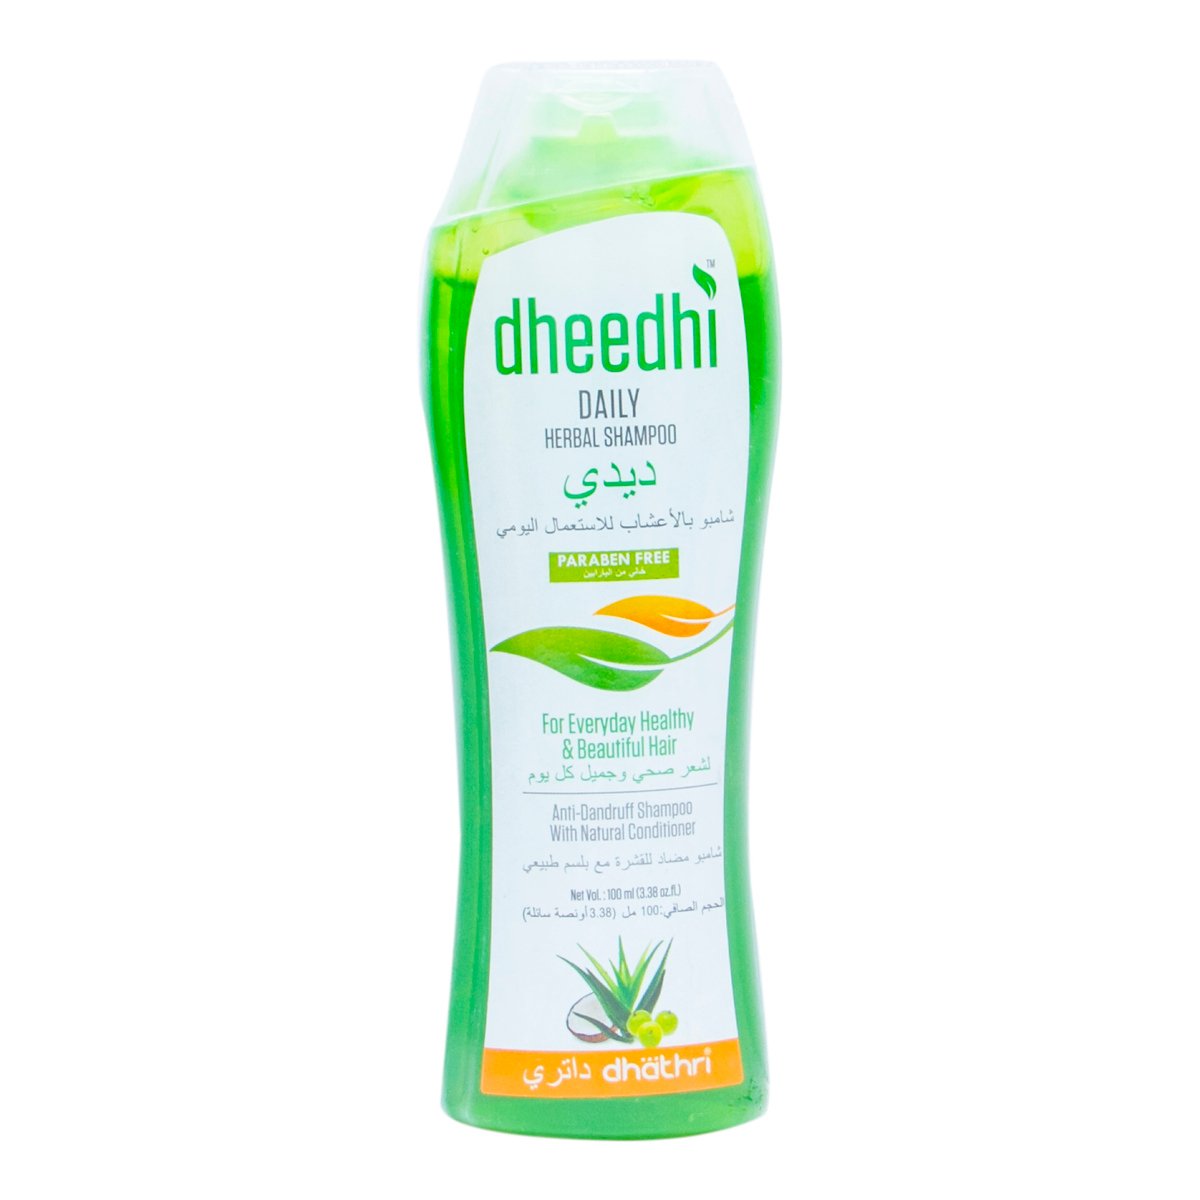 Dhathri Dheedhi Daily Herbal Shampoo 100 ml